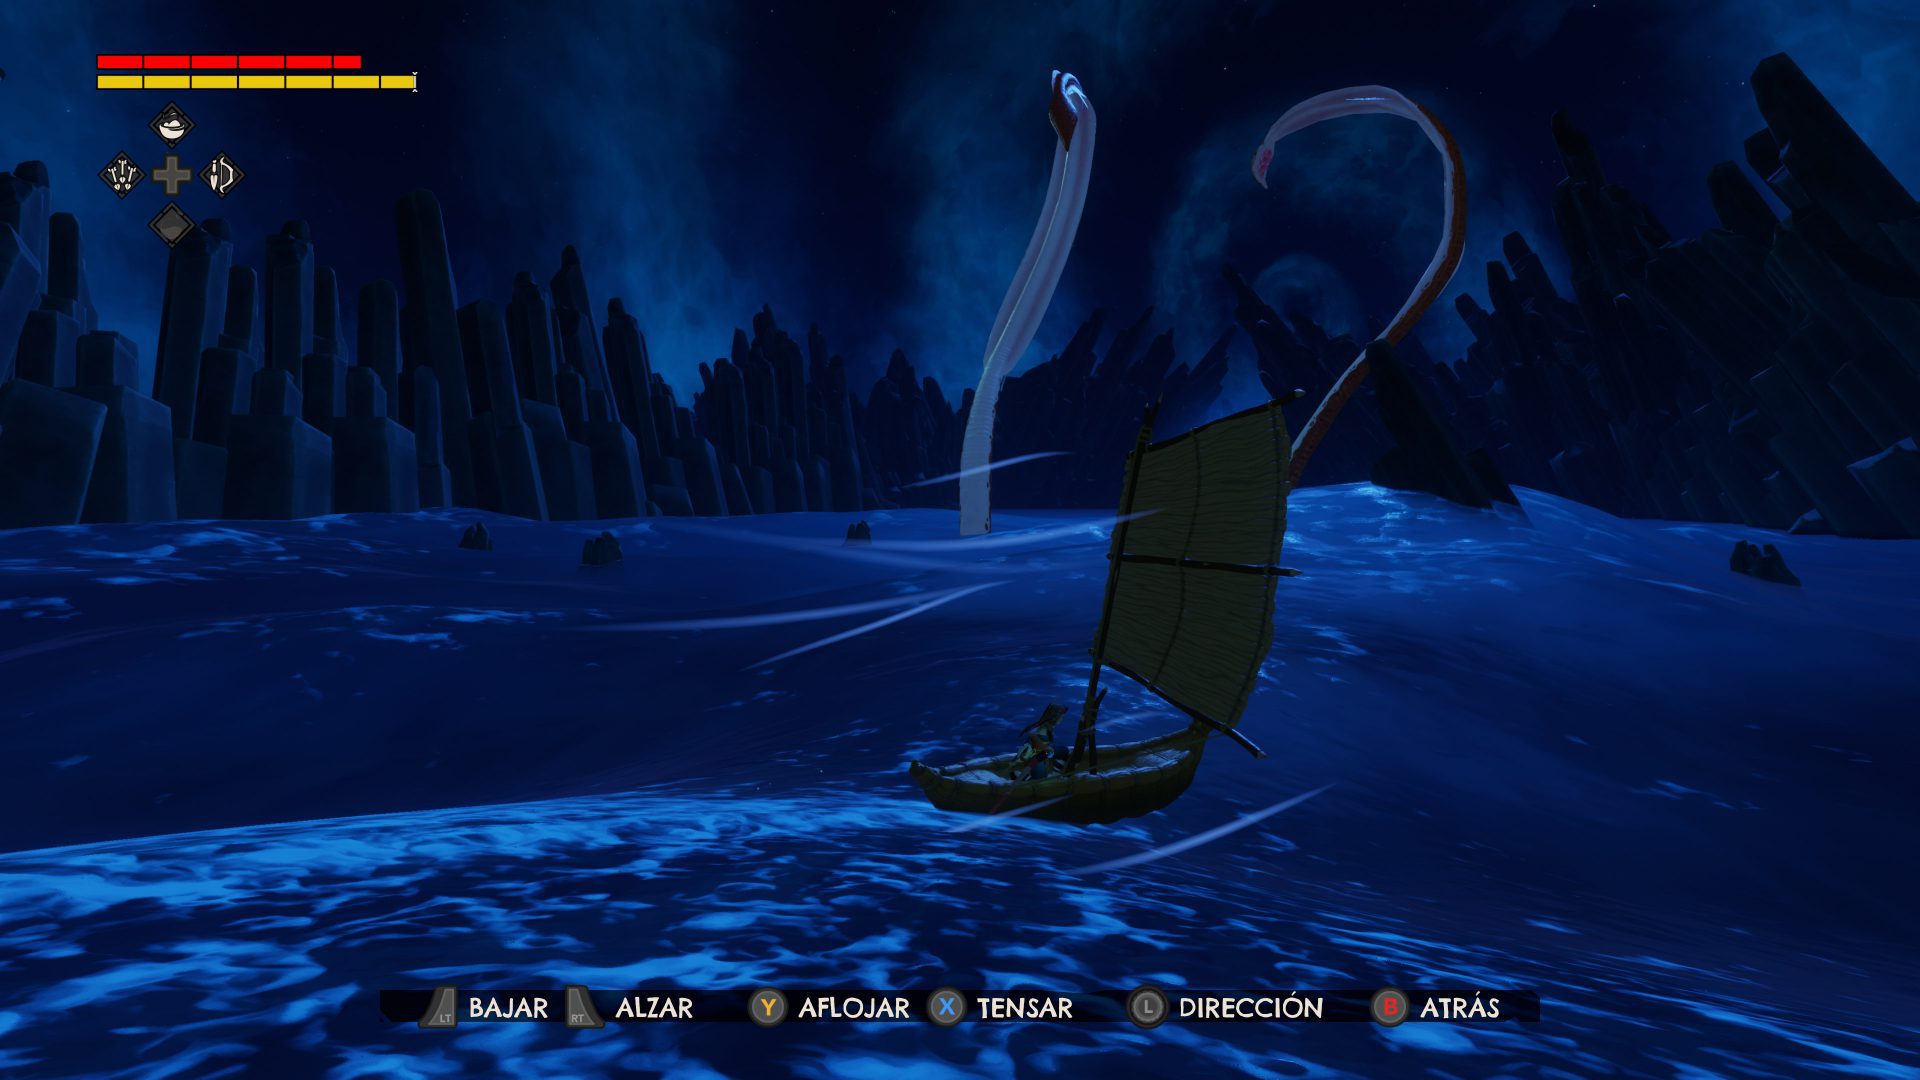 Análisis de Windbound - Analizamos Windbound para Xbox One, donde zarparemos en busca de nuestra tribu tras sufrir un naufragio en las Islas Prohibidas. Un lugar en el que nos tocará sobrevivir recolectando y luchando contra la fauna, mientras exploramos este misterioso archipiélago.